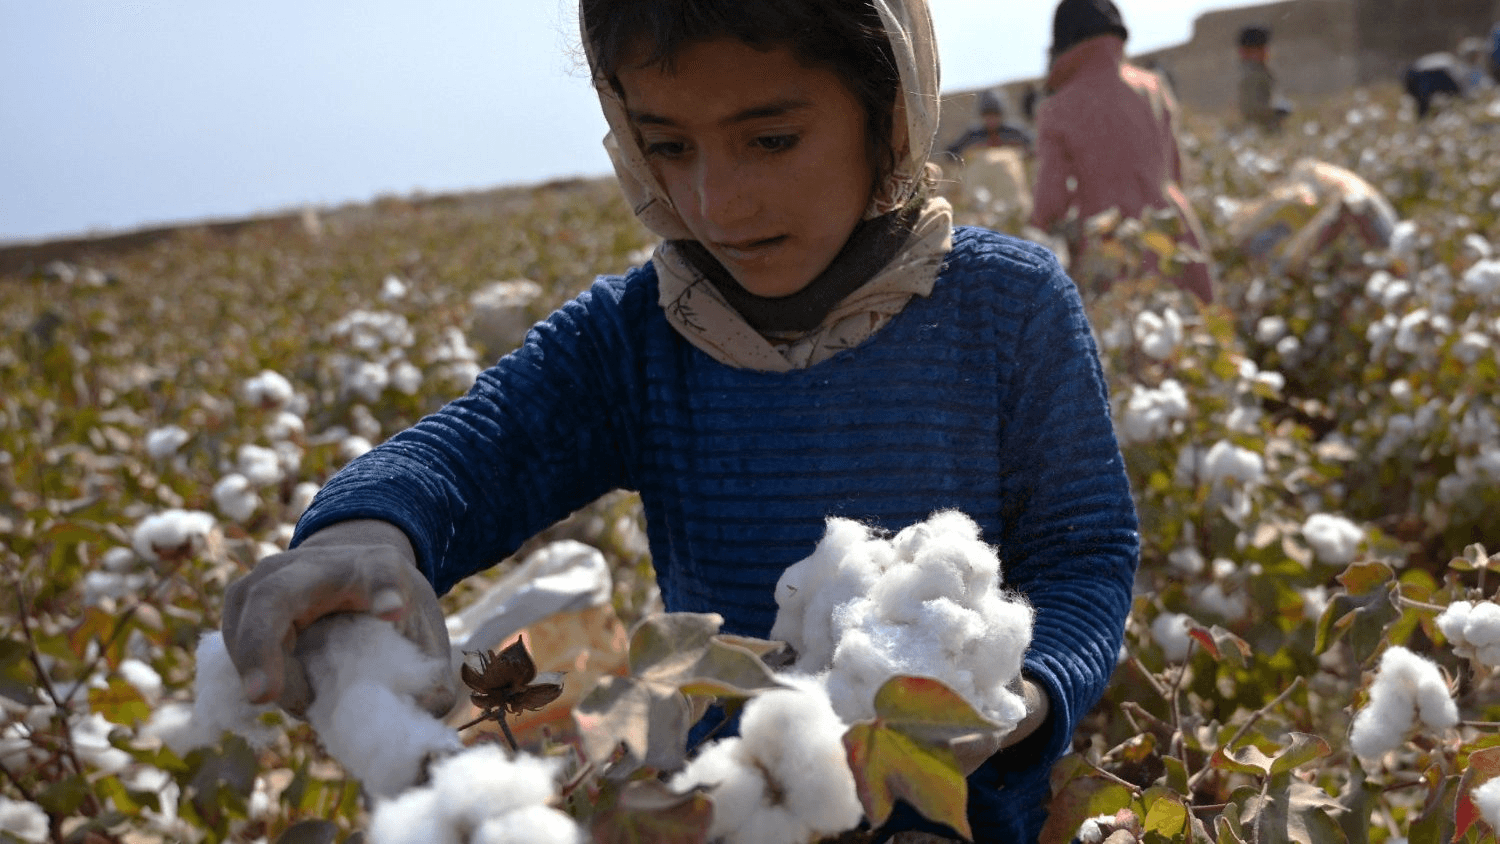 Sfruttamento di bambini nella moda: una bambina lavora in un campo di cotone